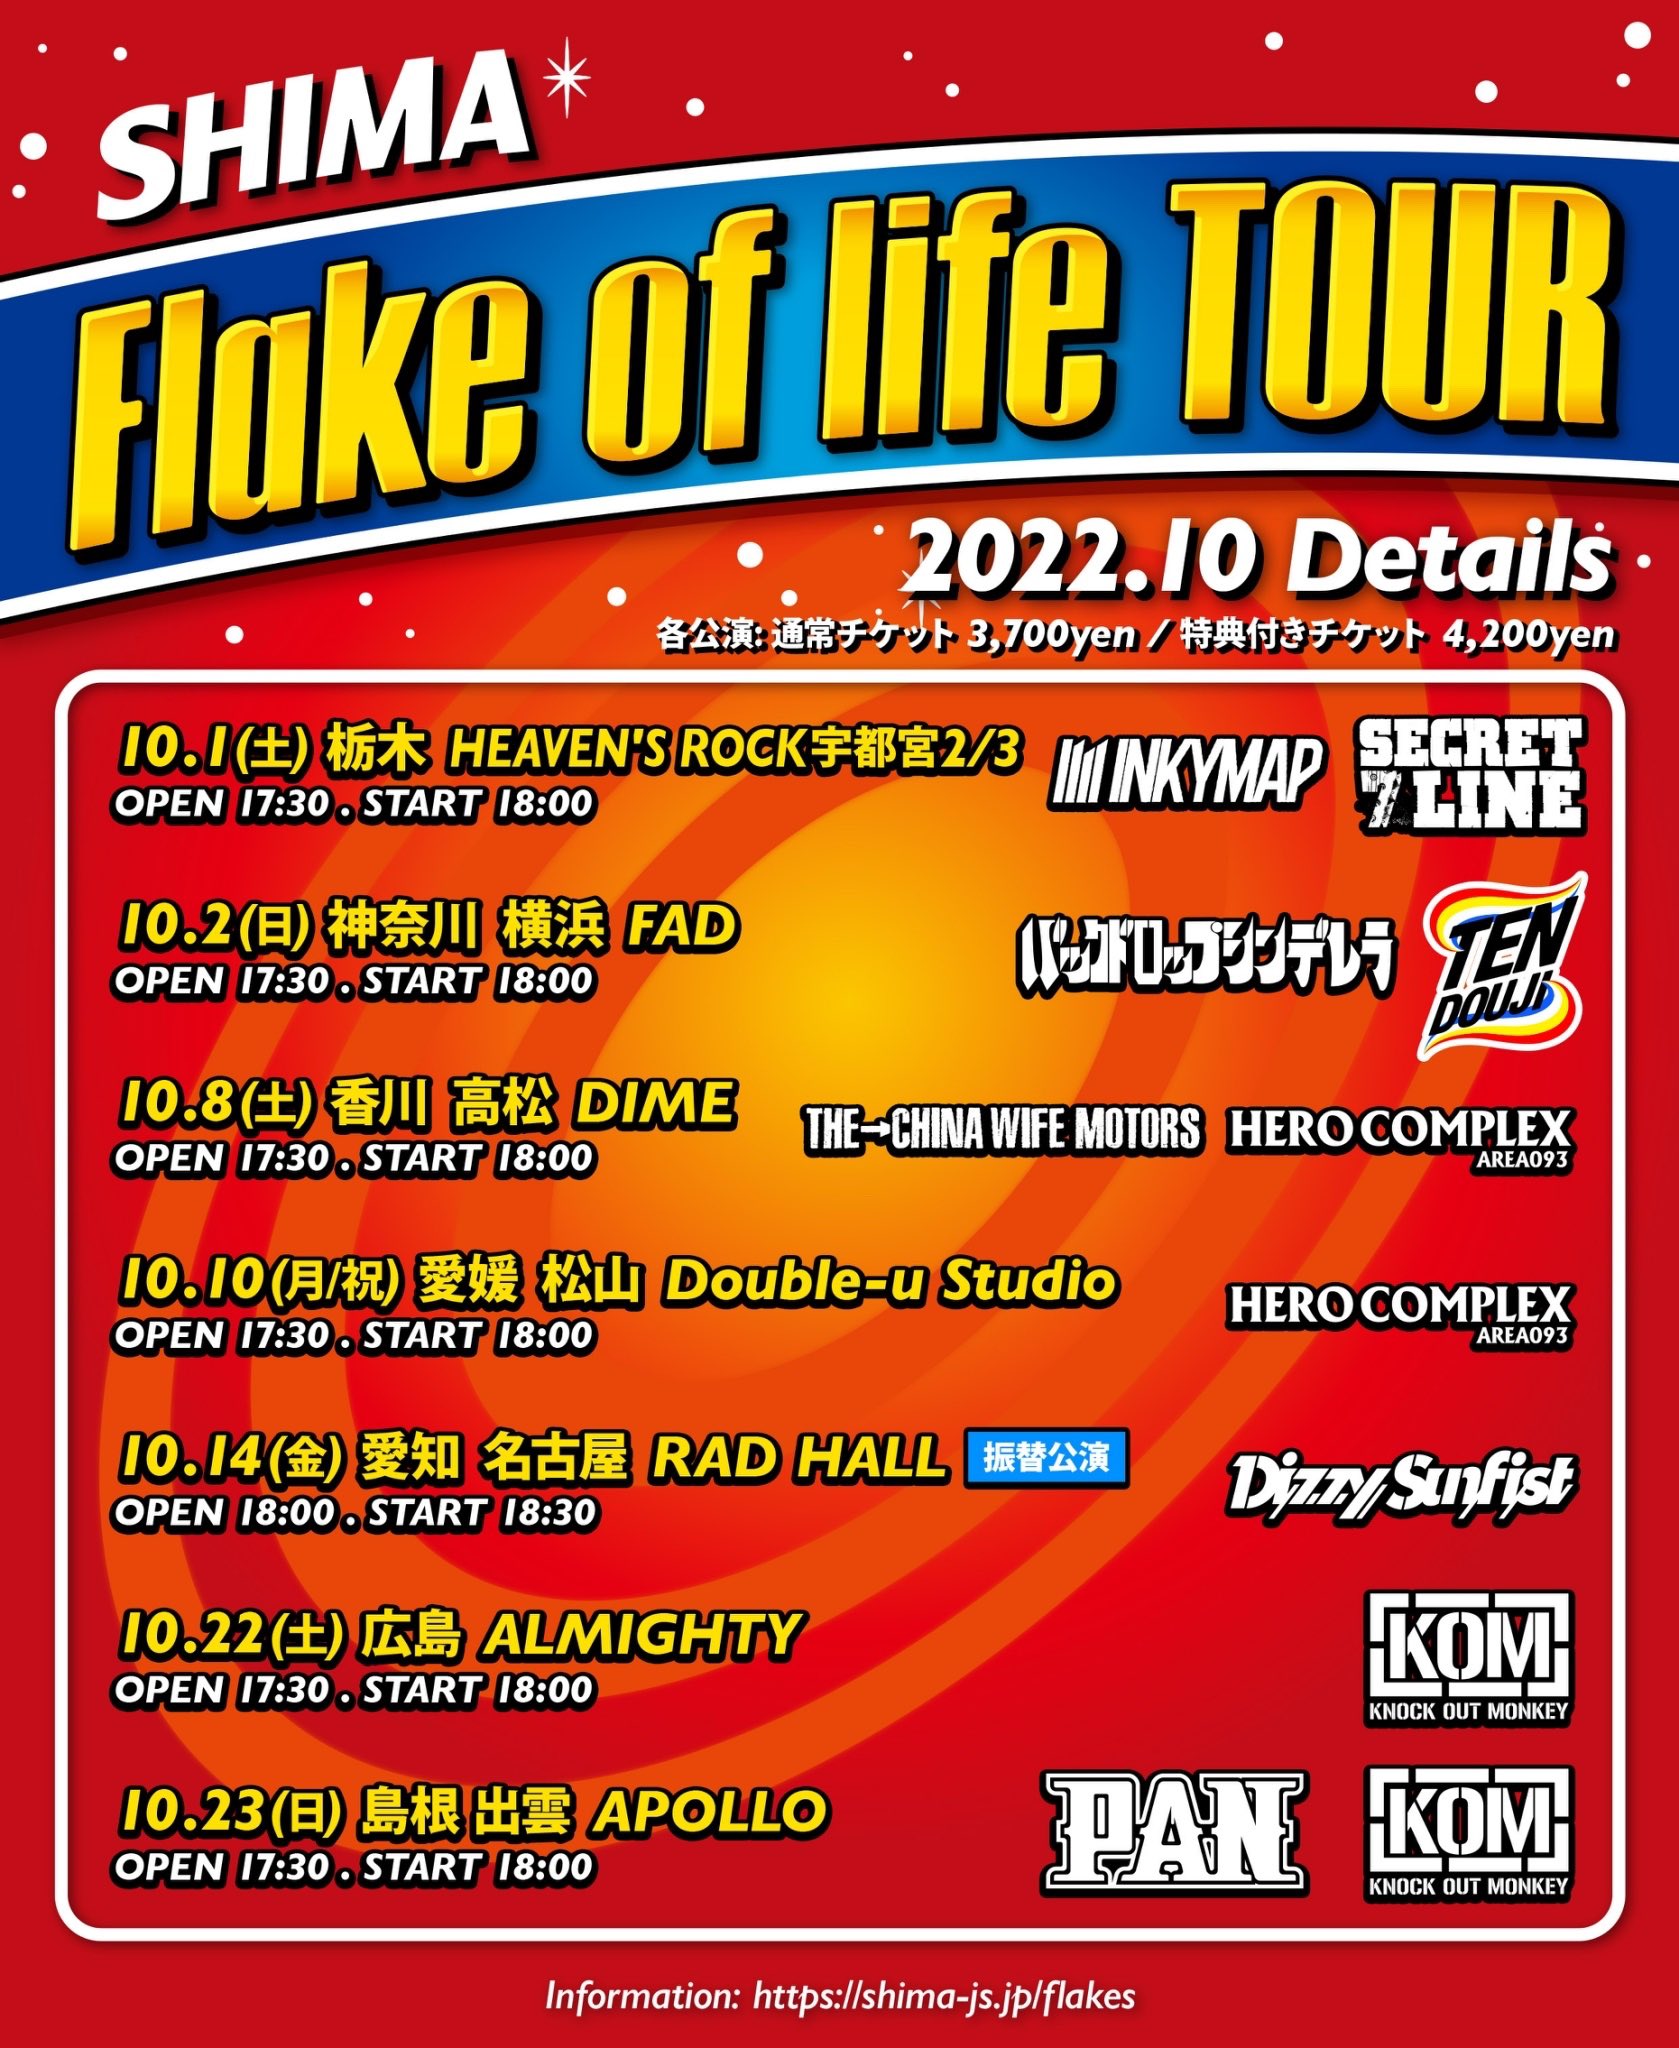 SHIMA Flake of life TOUR